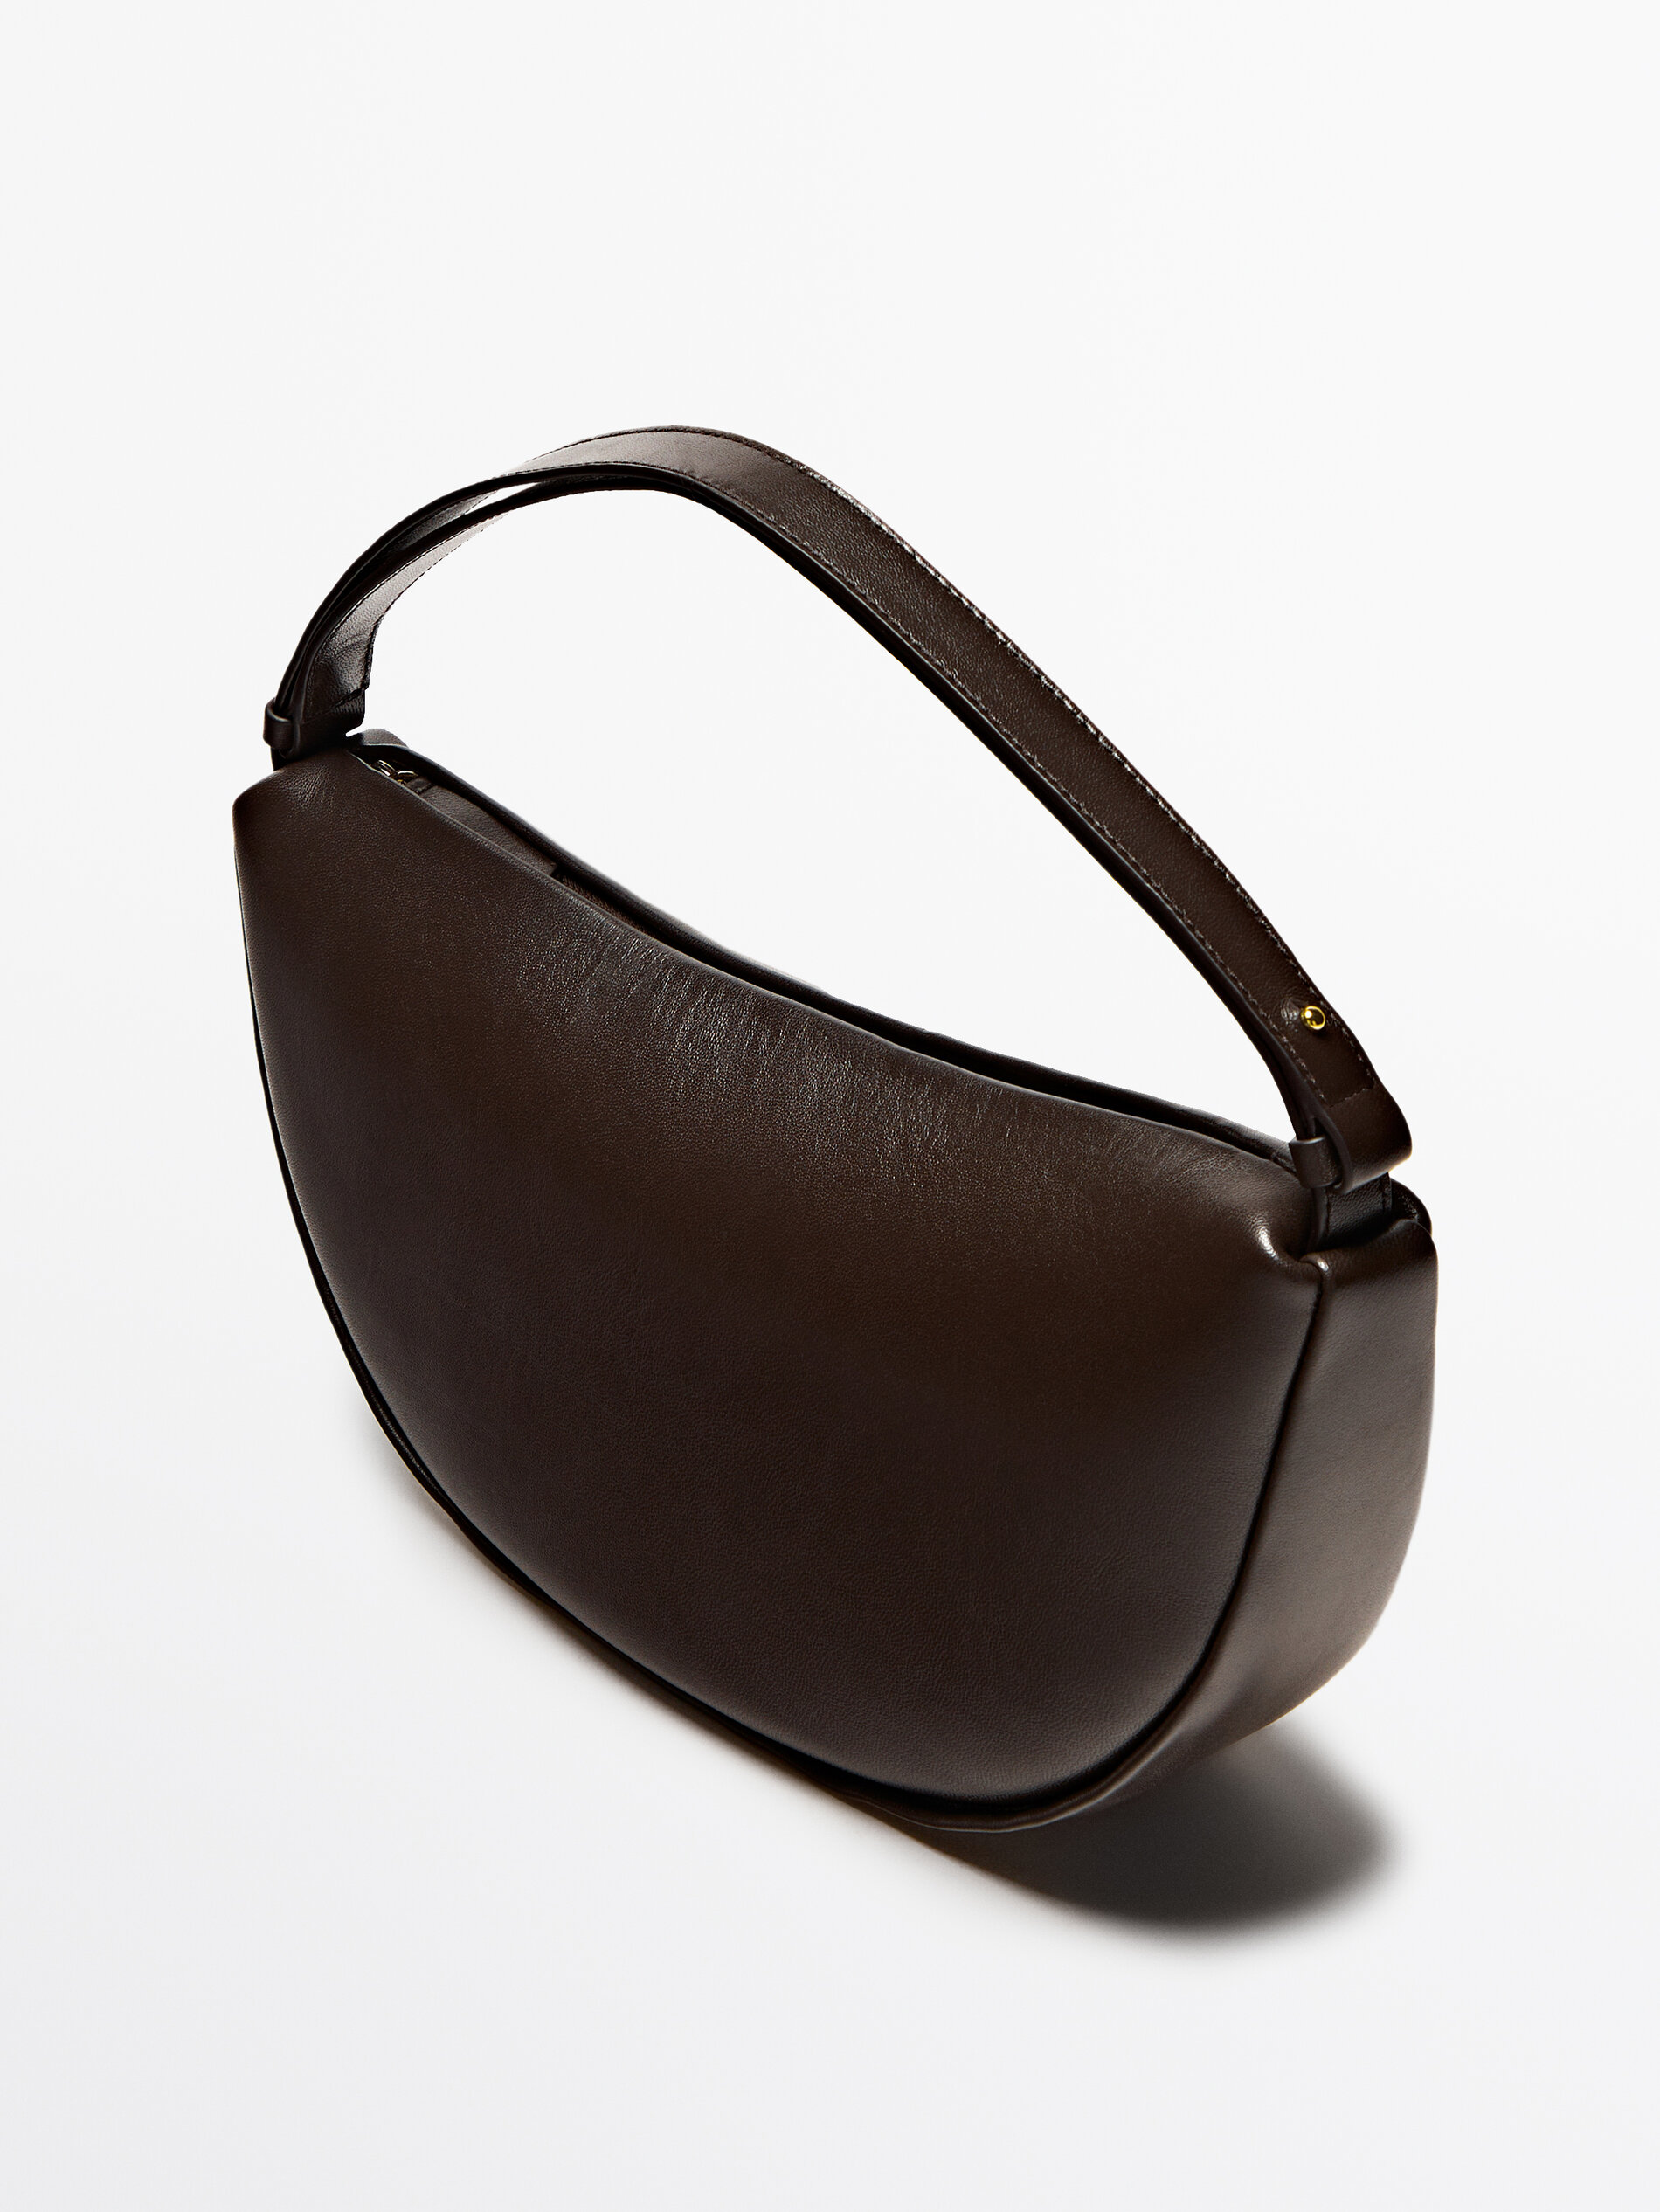 Half Moon Leather Shoulder Bag curated on LTK